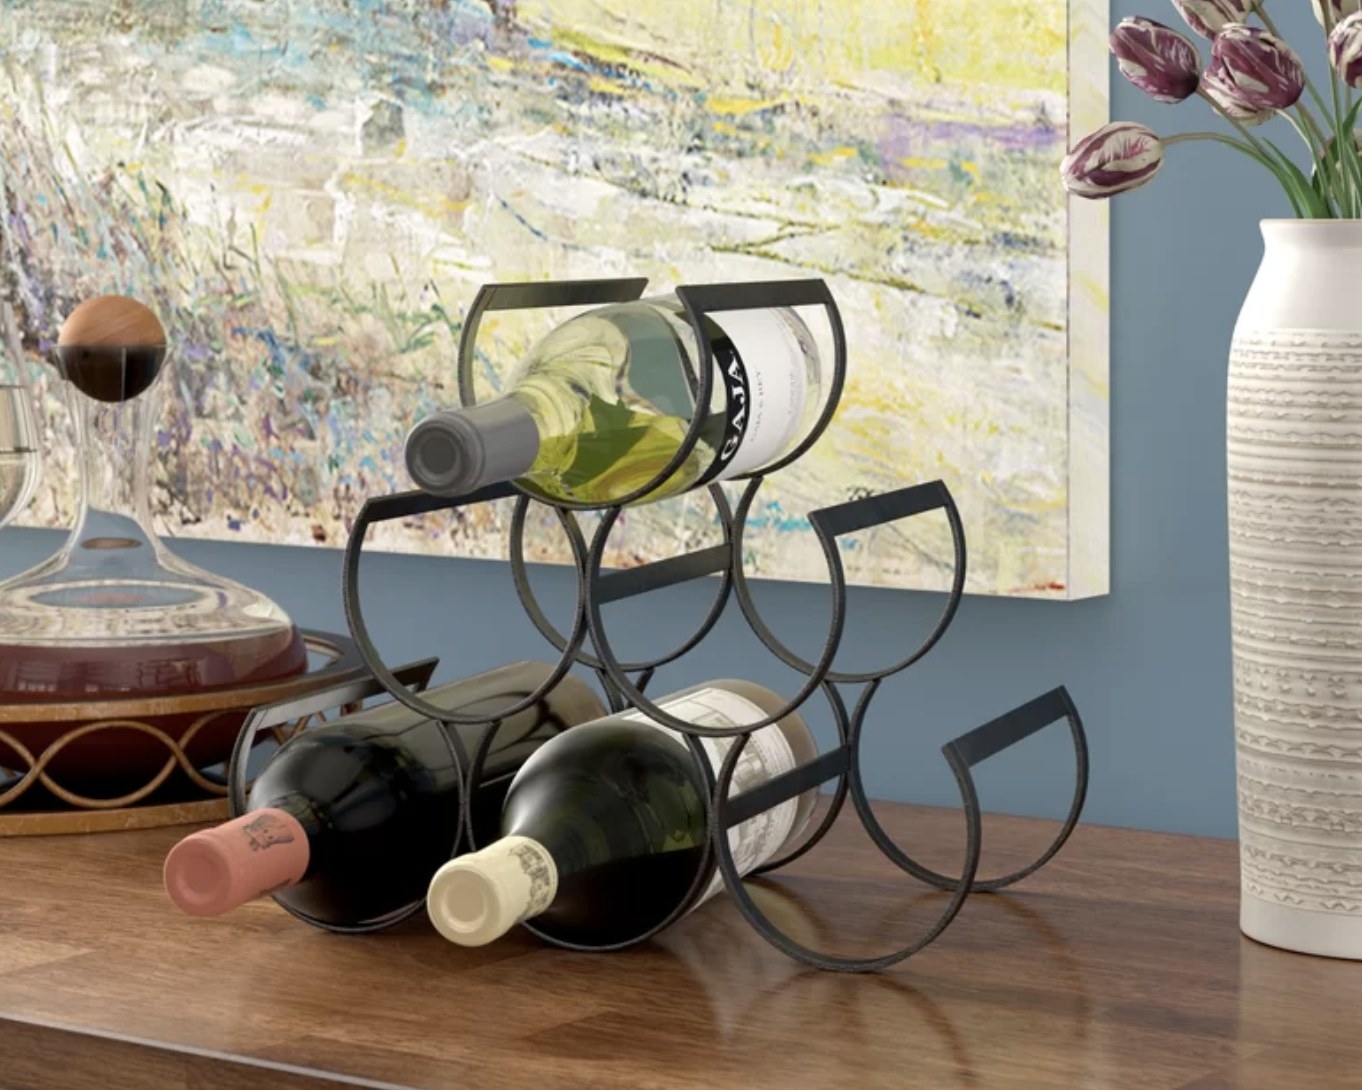 A wine bottle rack with bottles in it